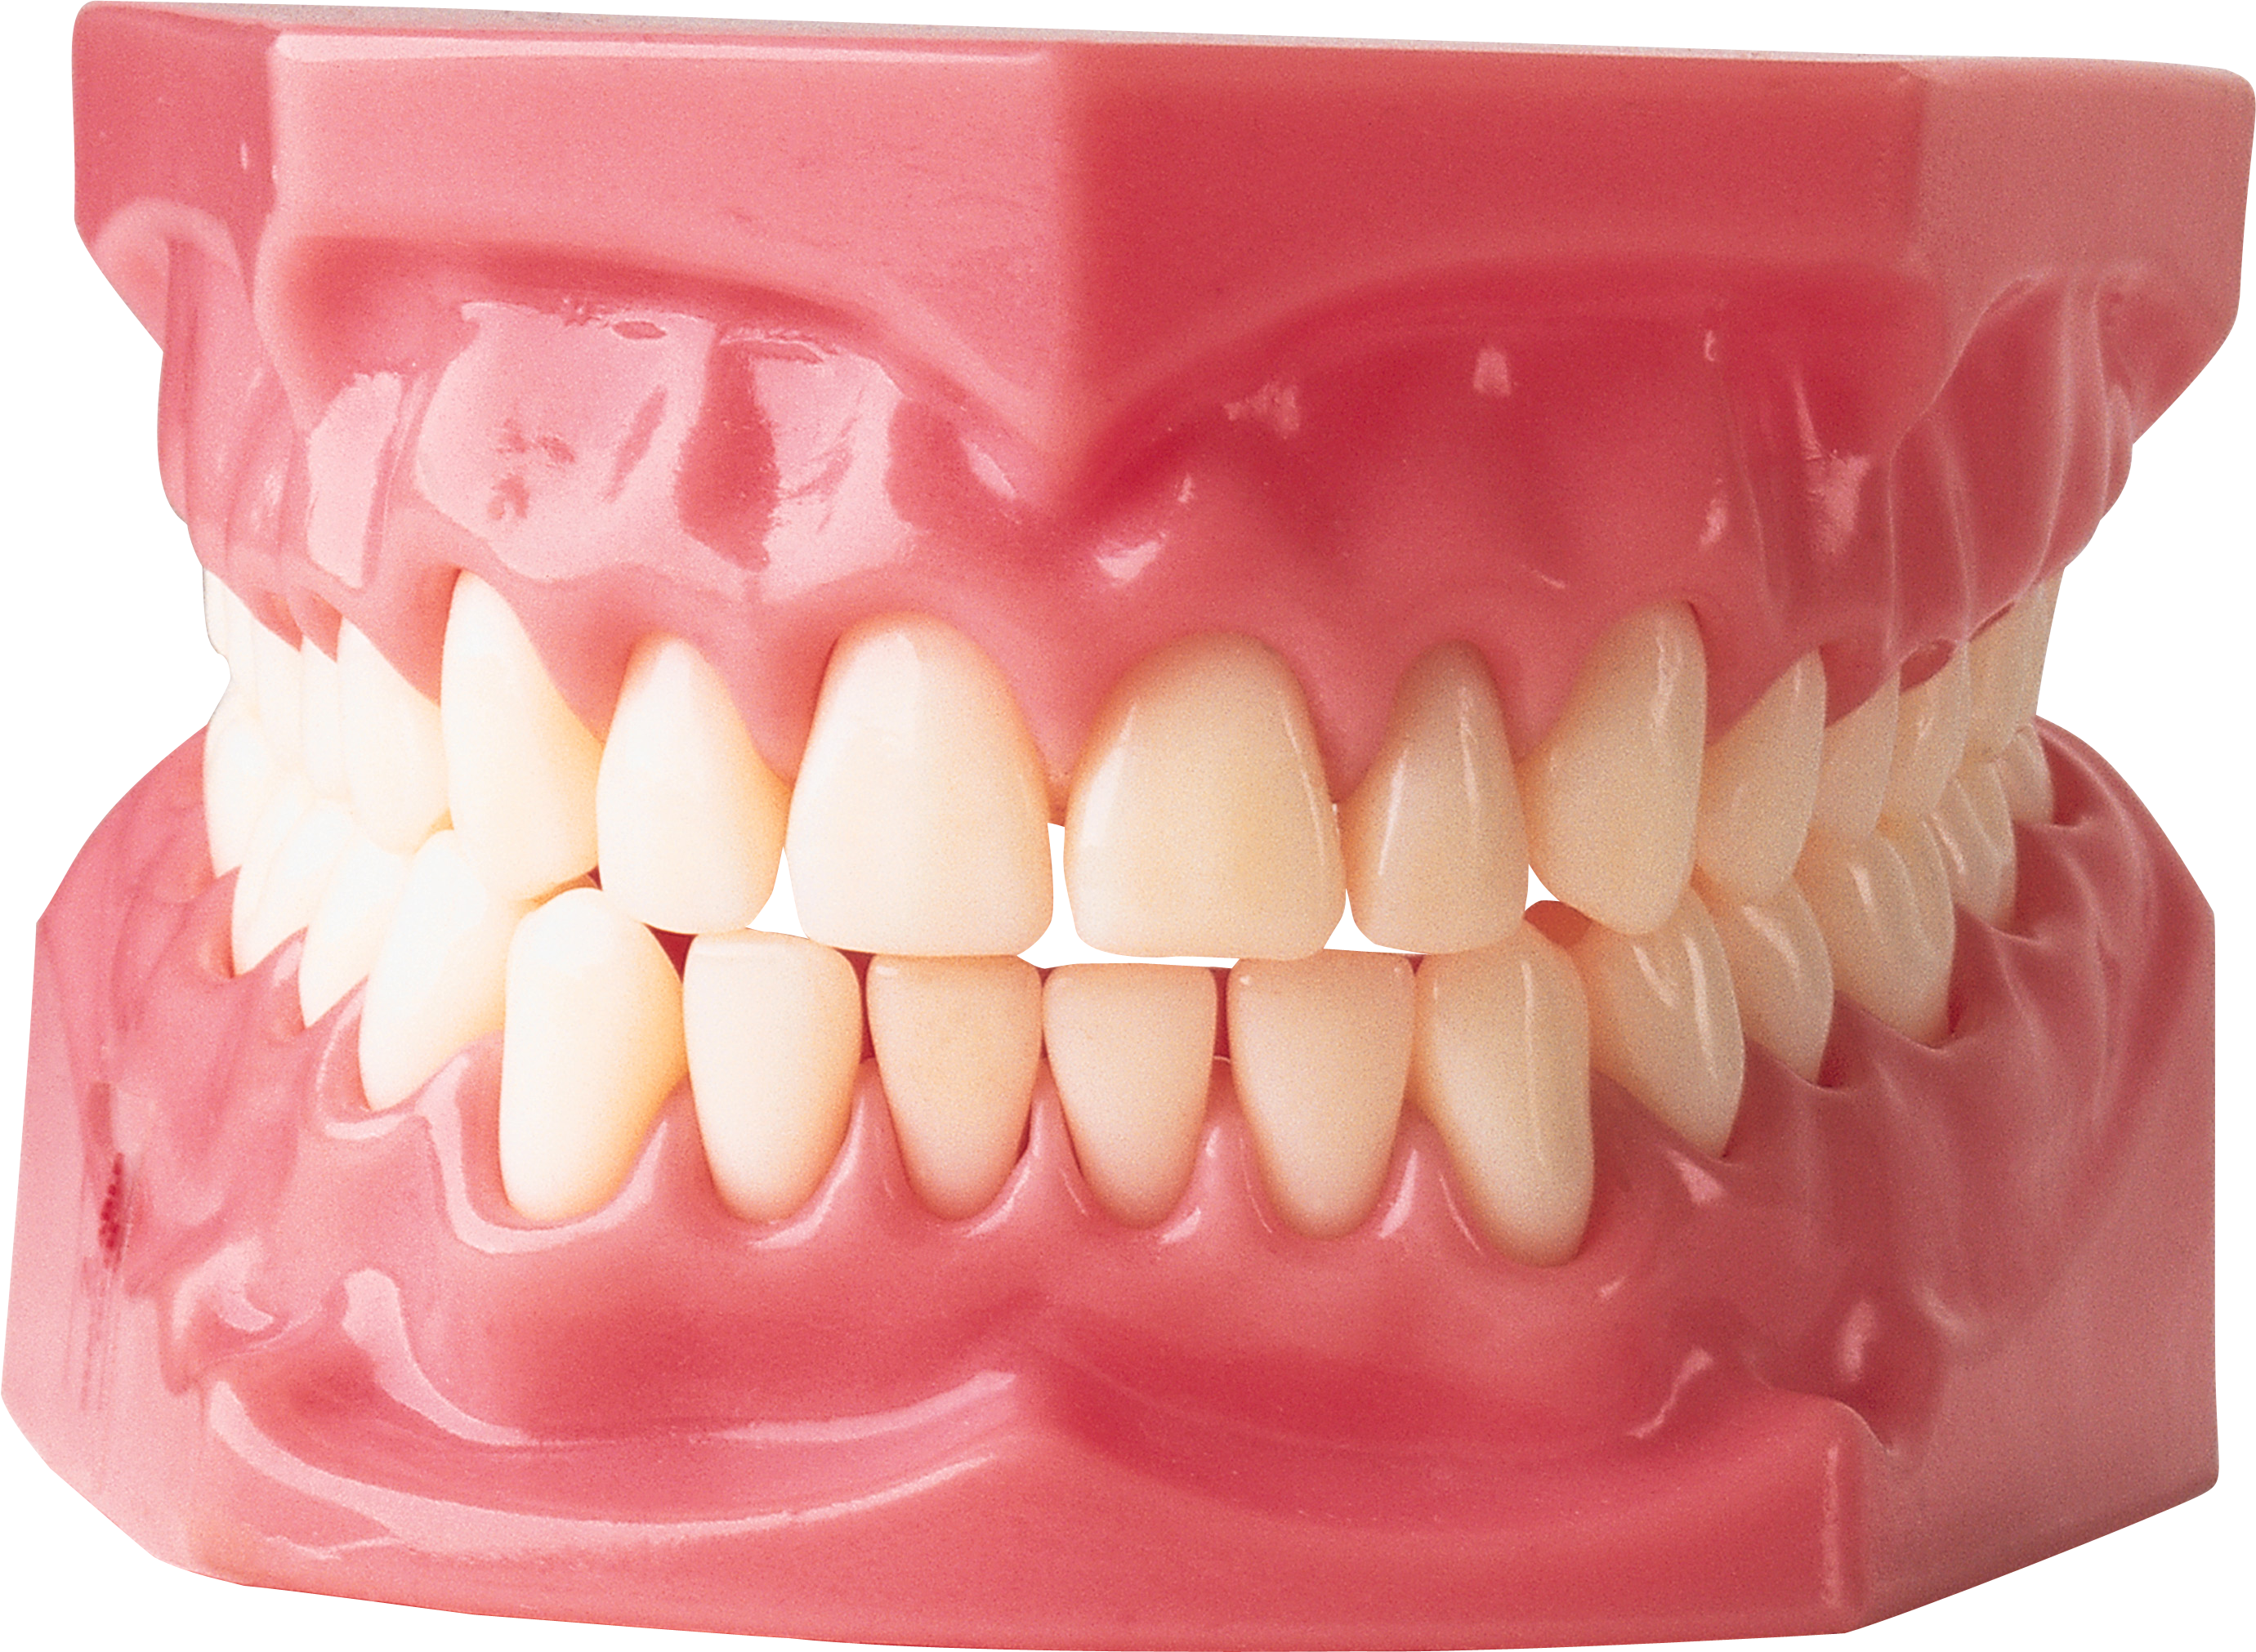 Immagine Trasparente del dente bianco